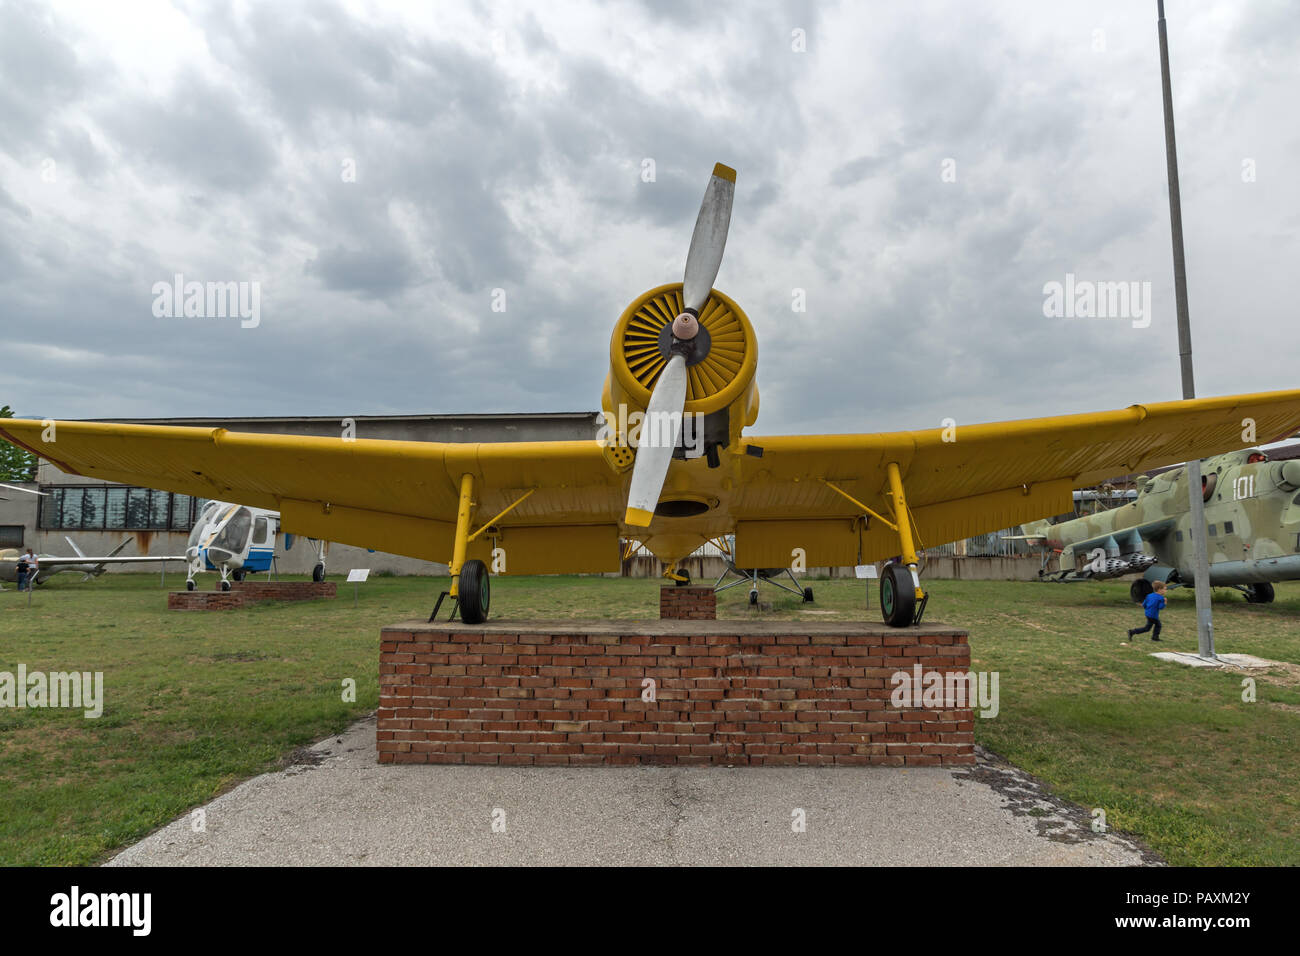 KRUMOVO, PLOVDIV, BULGARIA - 29 APRIL 2017: Aviation Museum near Plovdiv Airport, Bulgaria Stock Photo